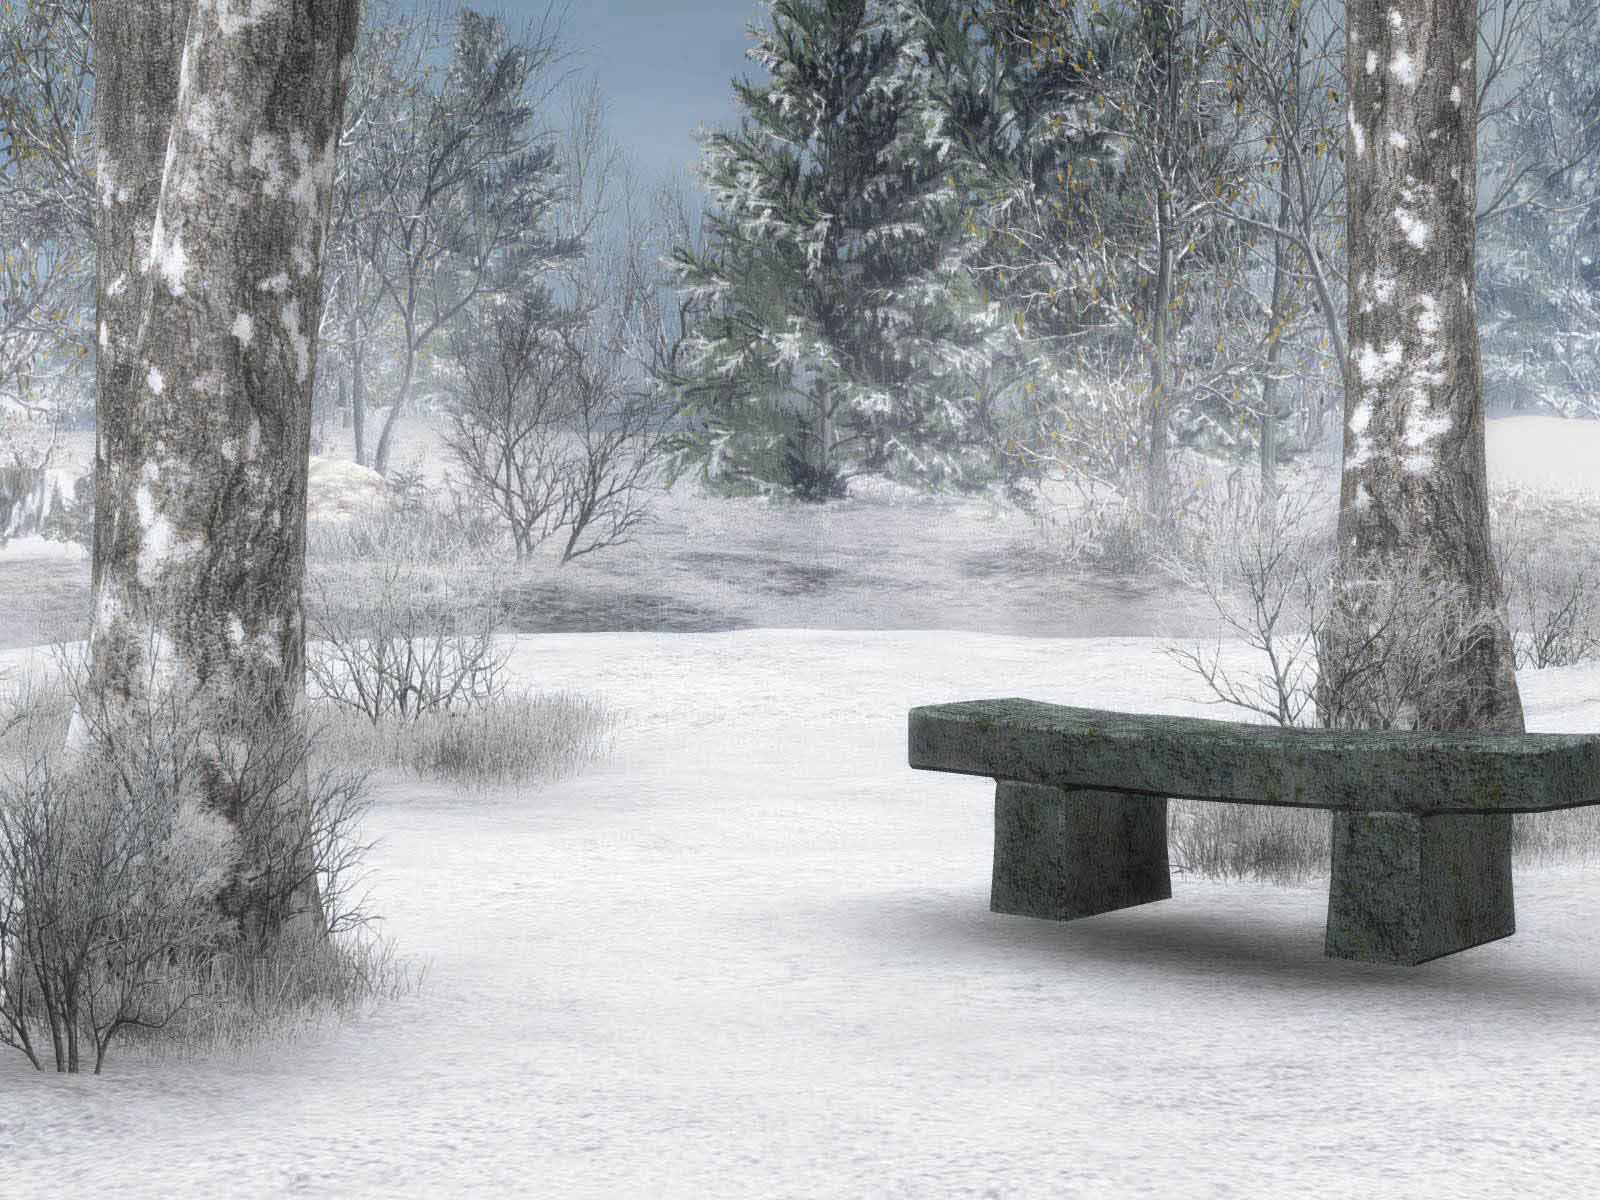 HD Wallpapers: Winter Scenes for Desktop